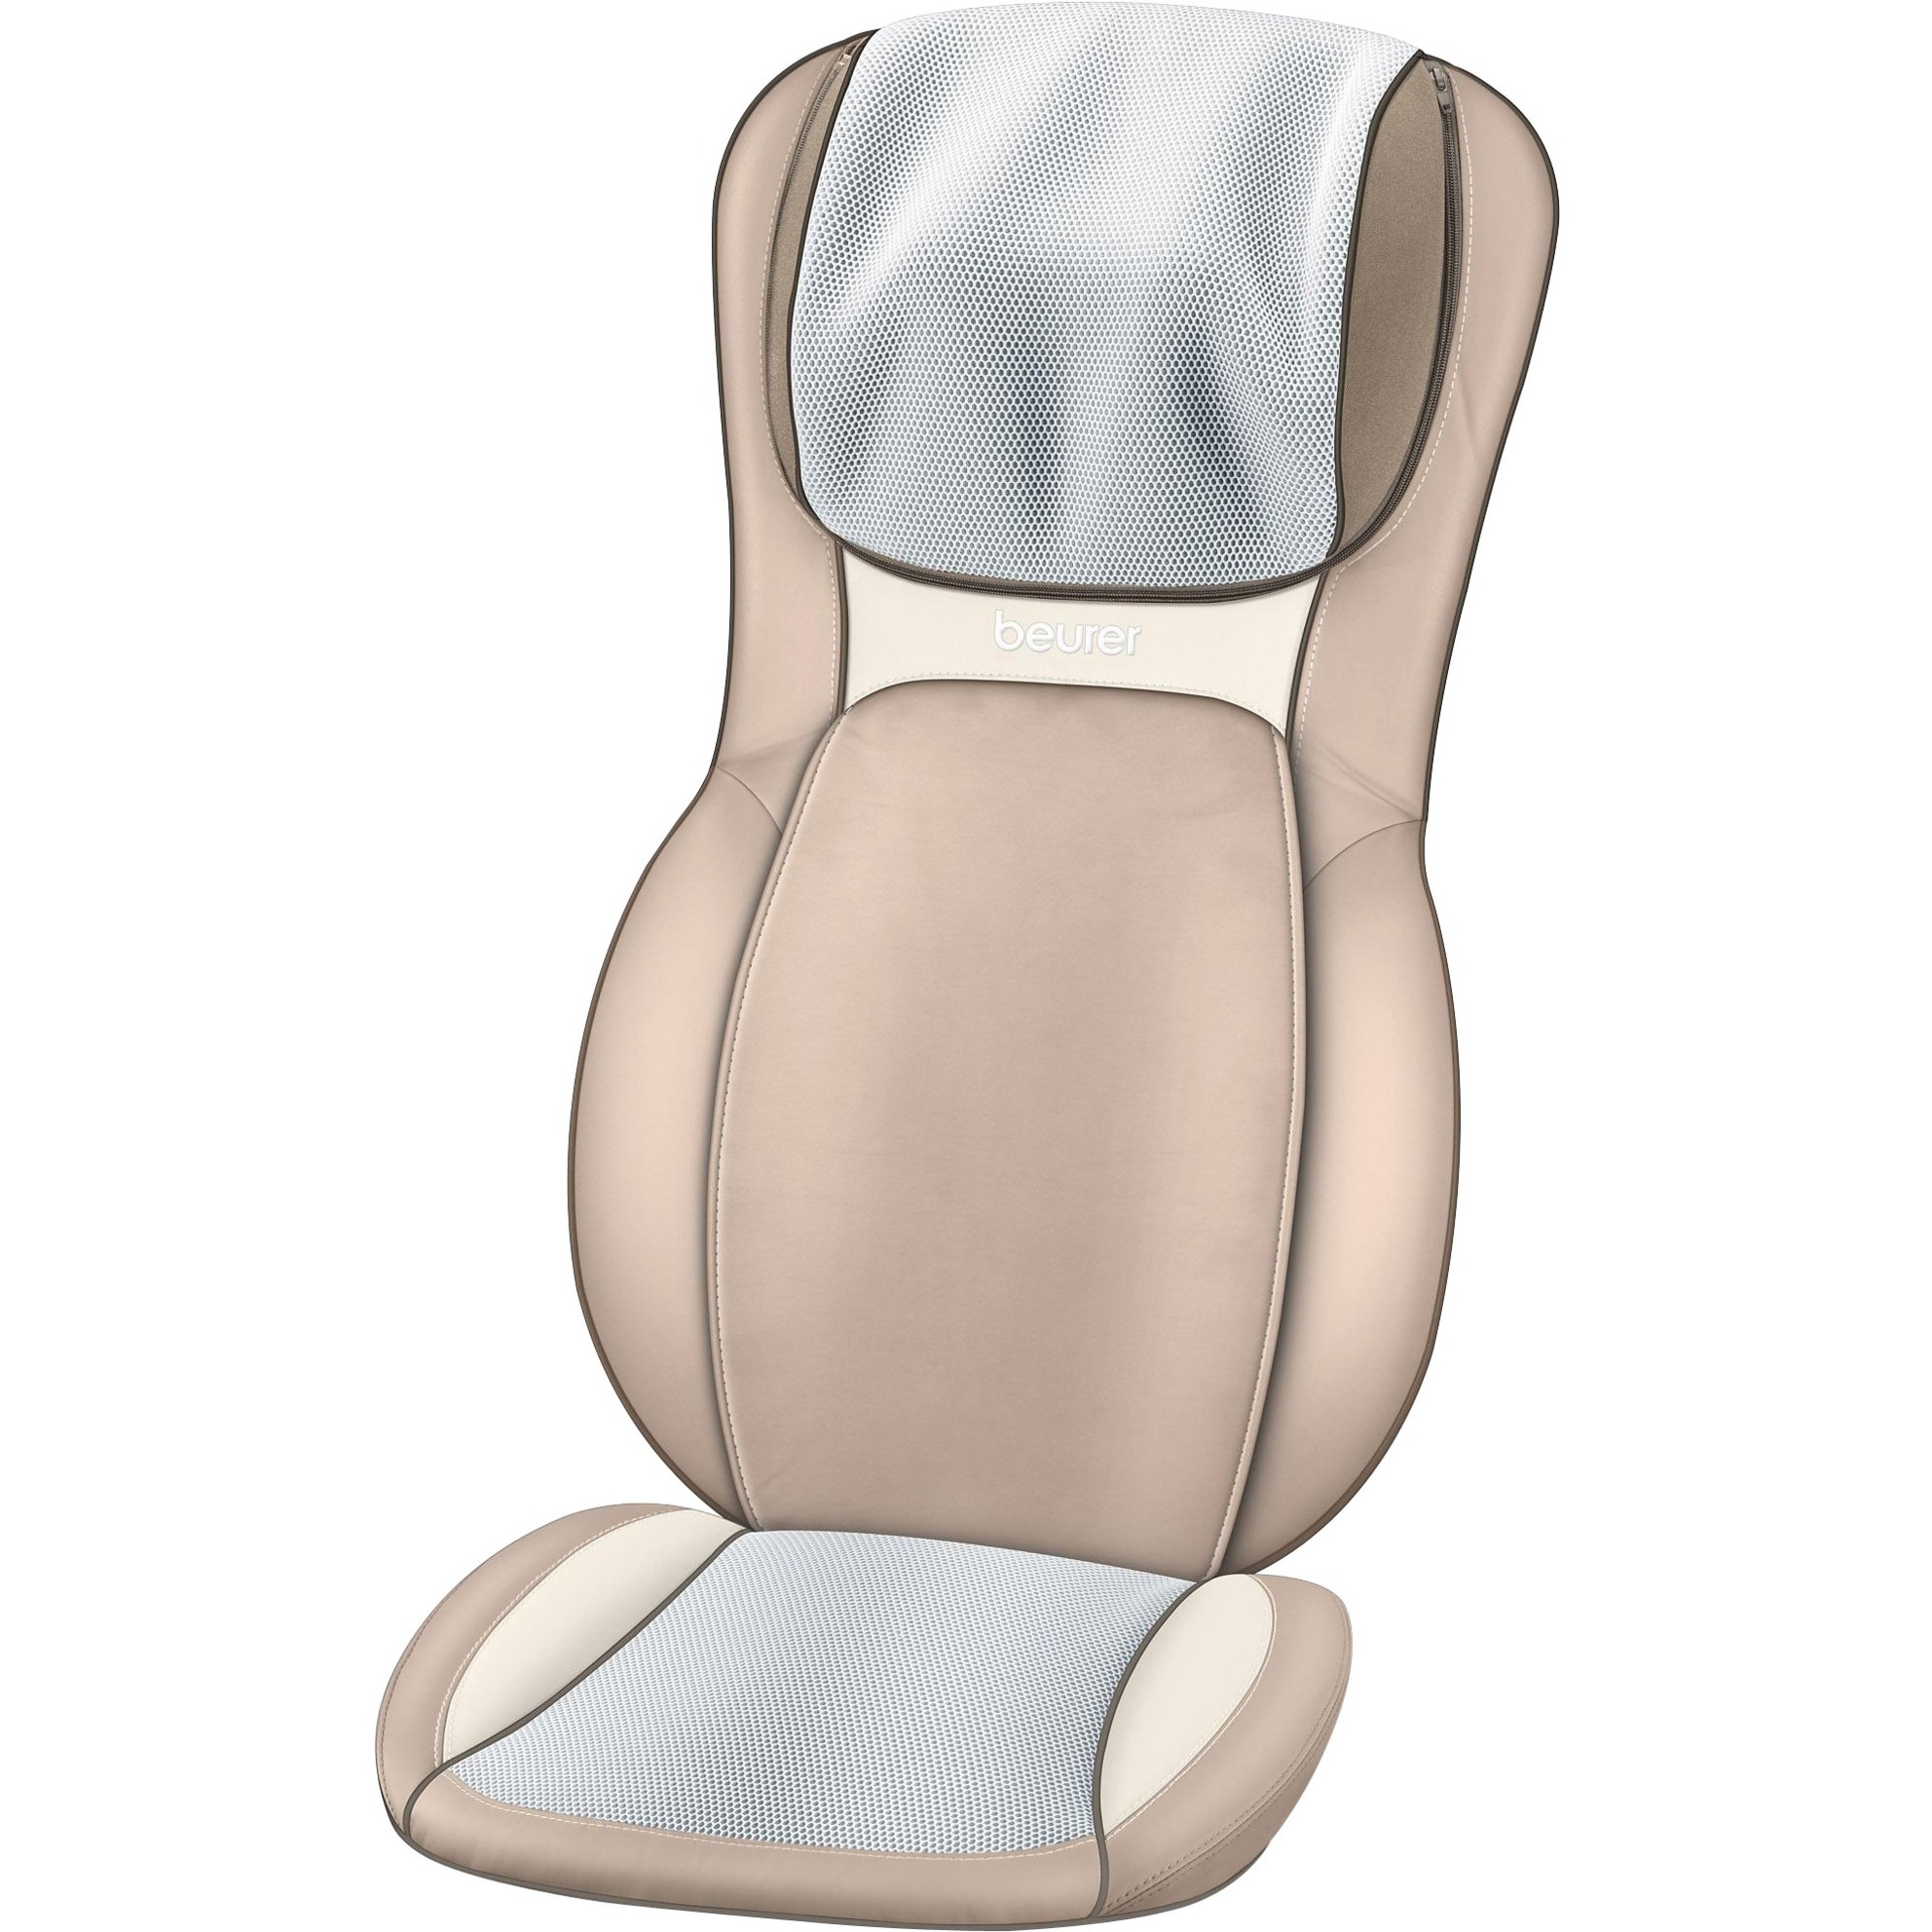 Image of Alternate - Shiatsu-Sitzauflage MG 295, Massagegerät online einkaufen bei Alternate